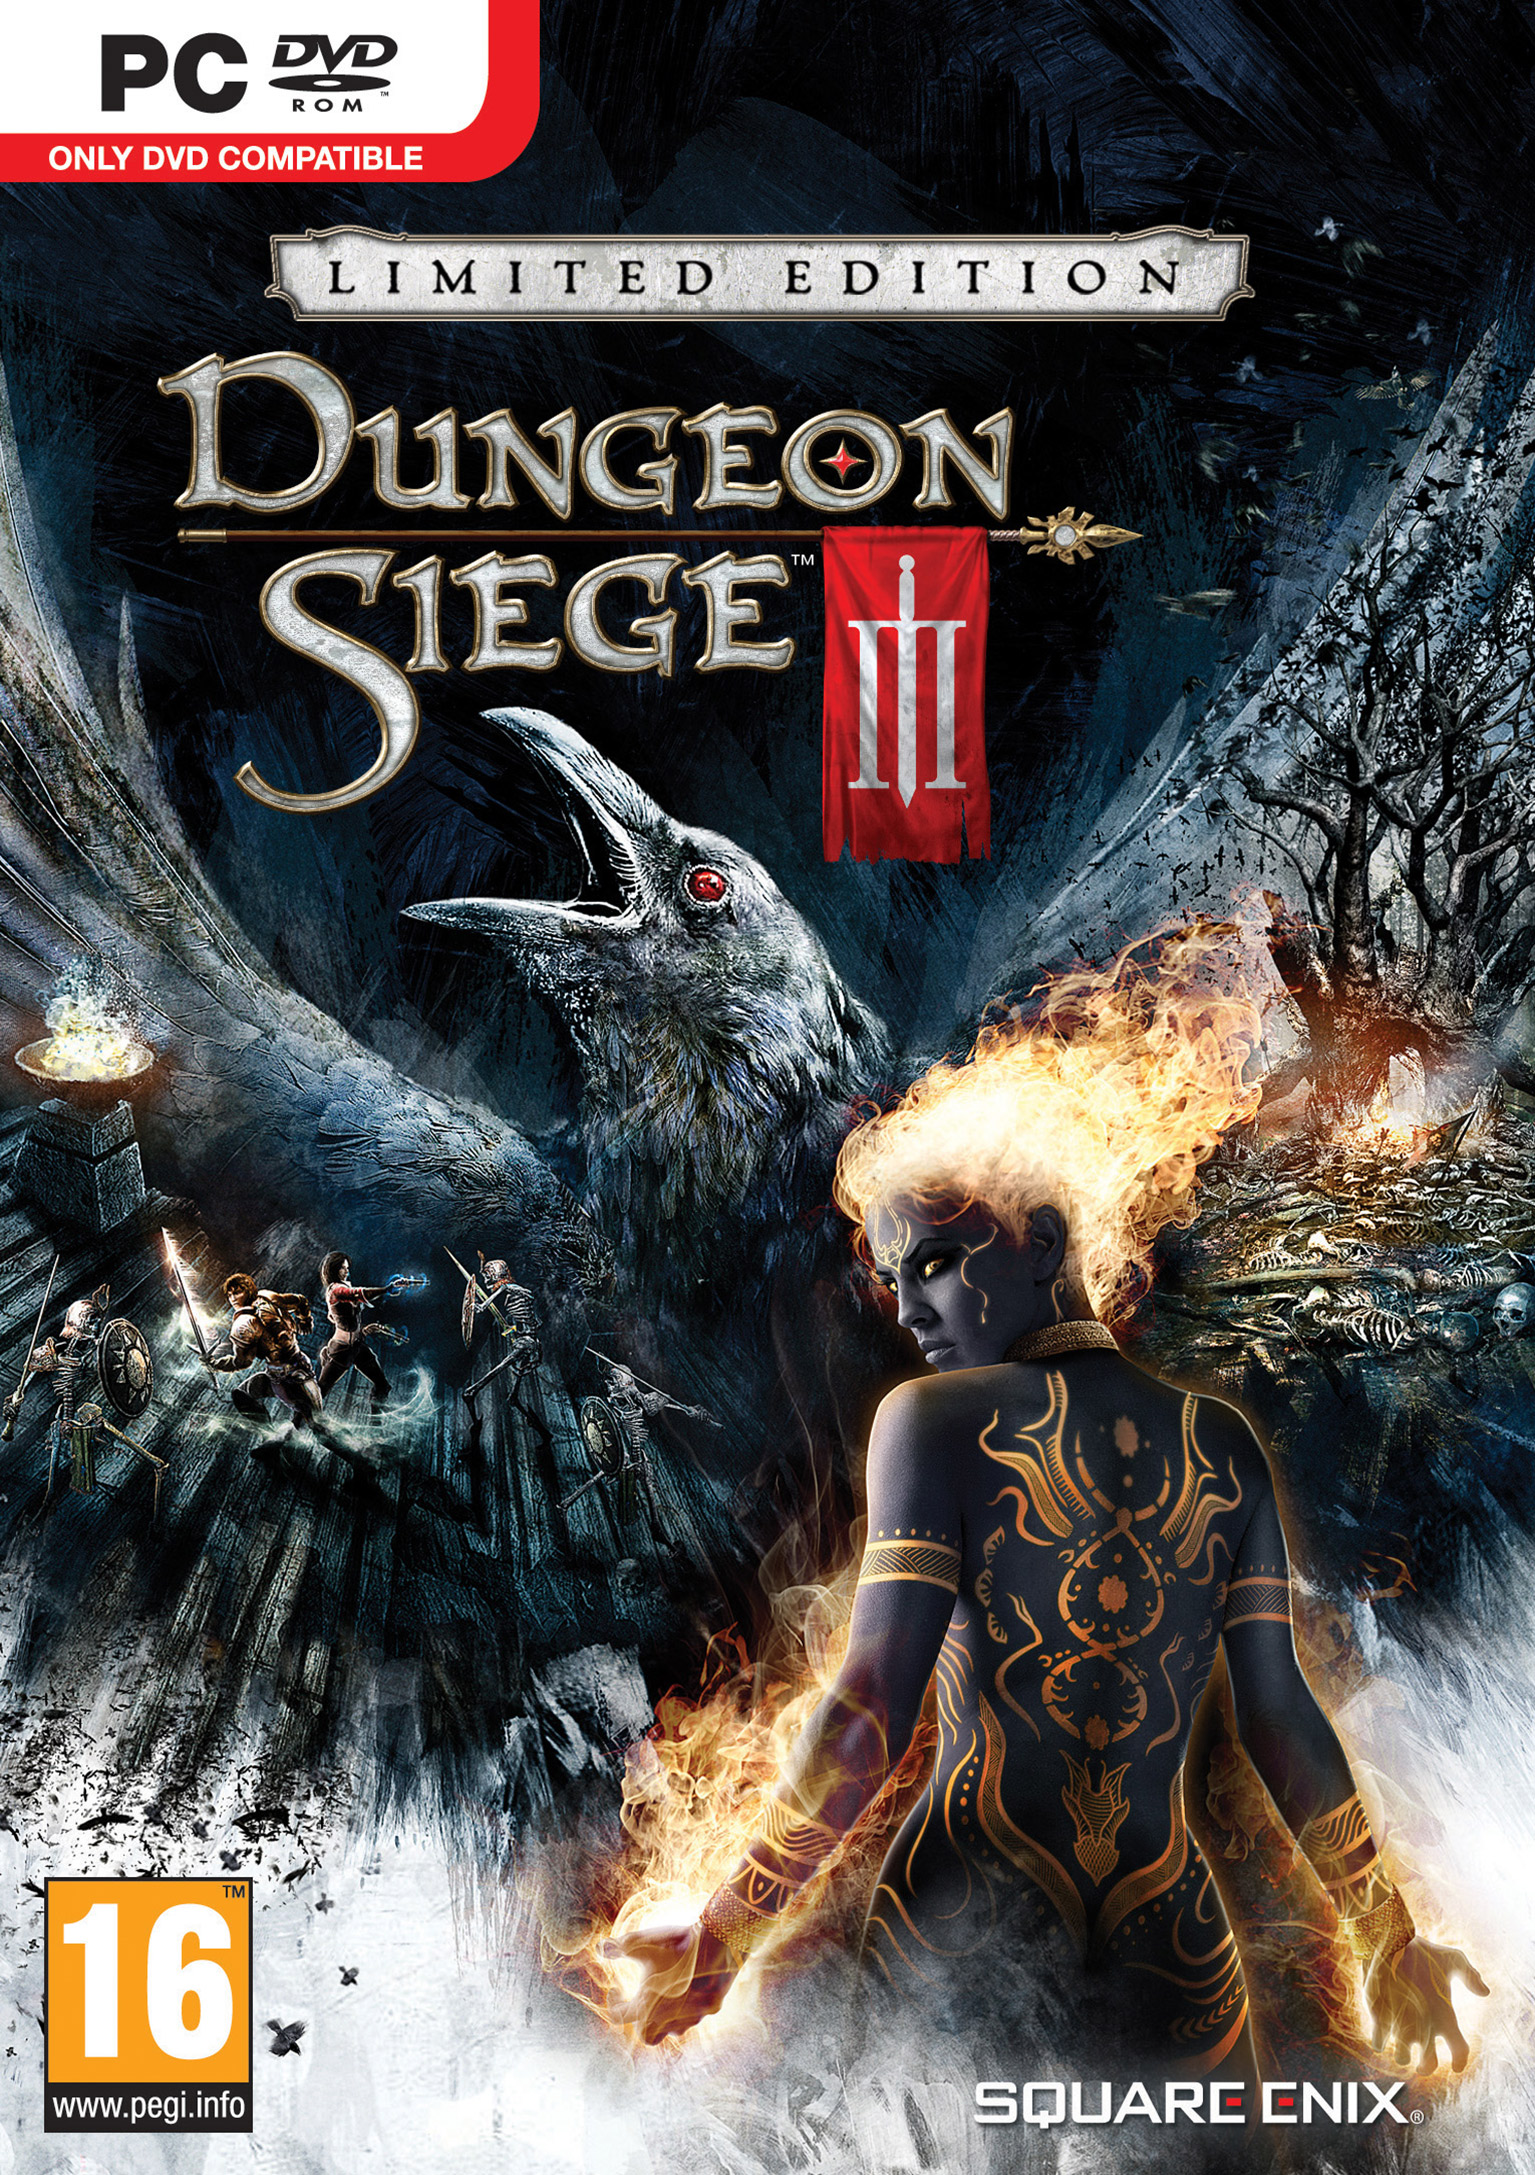 Dungeon Siege III - predn DVD obal 2